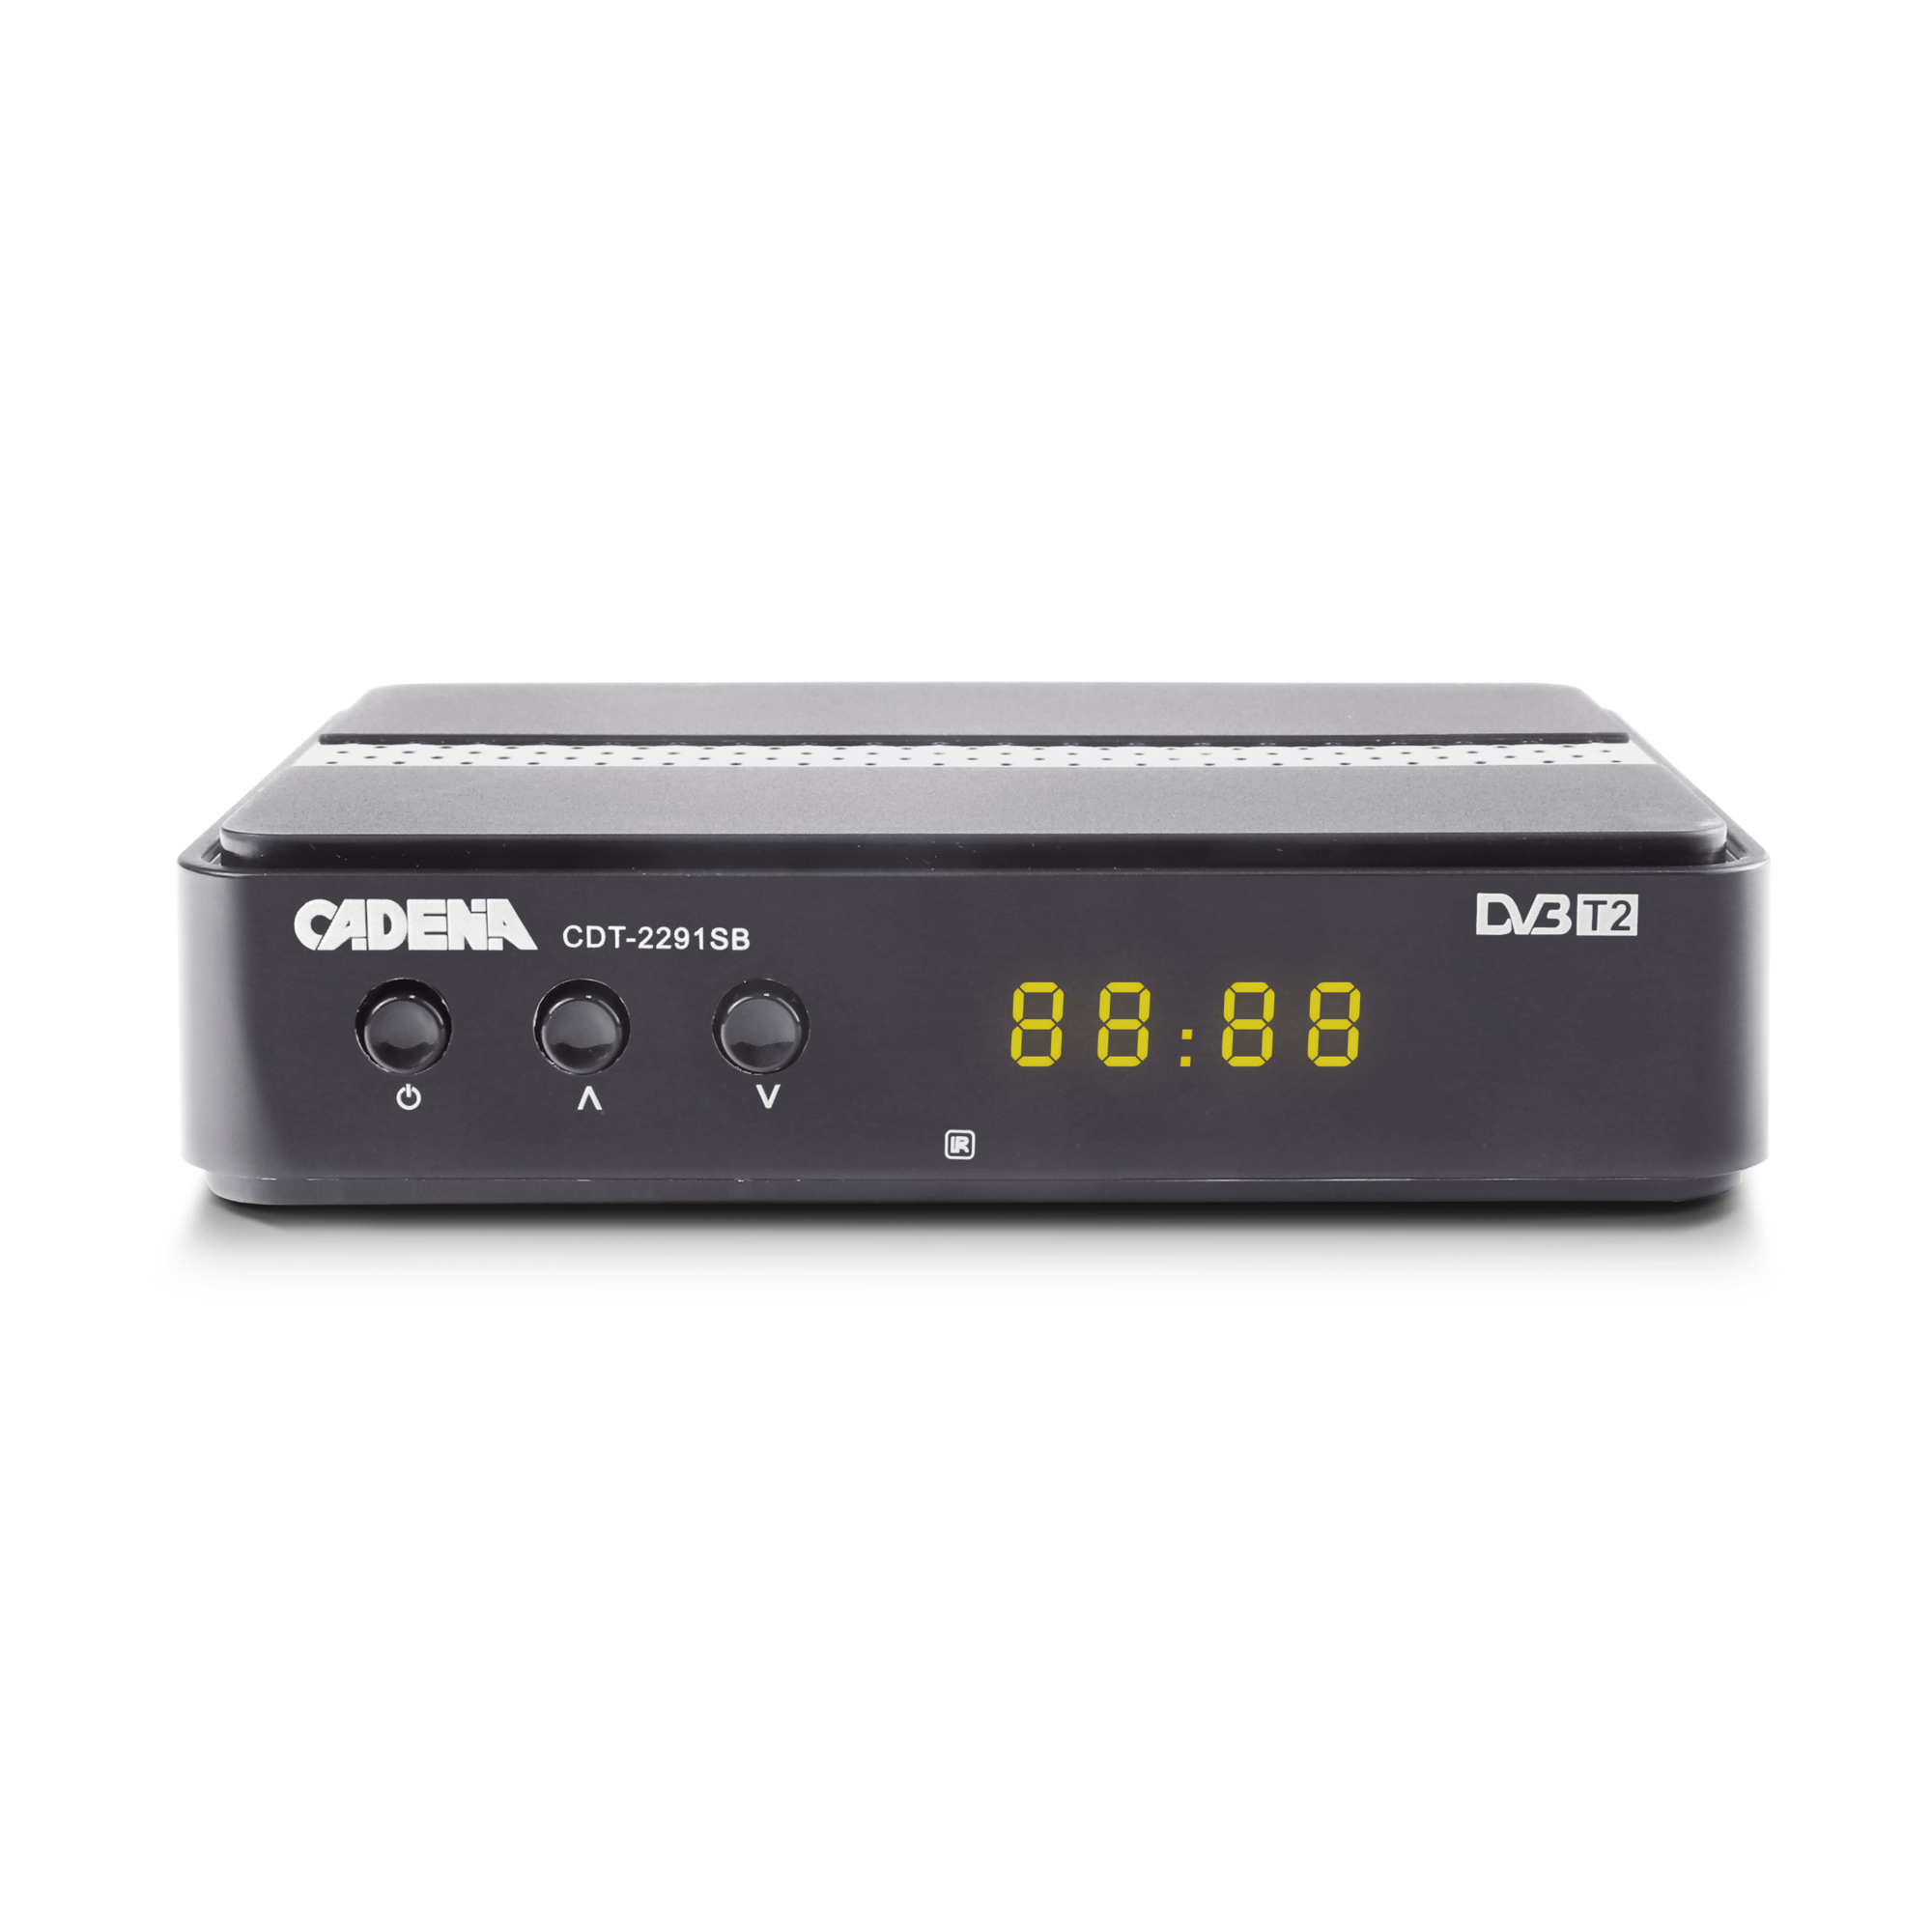 Цифровой эфирный ресивер Cadena CDT-2291SB DVB-T2 2